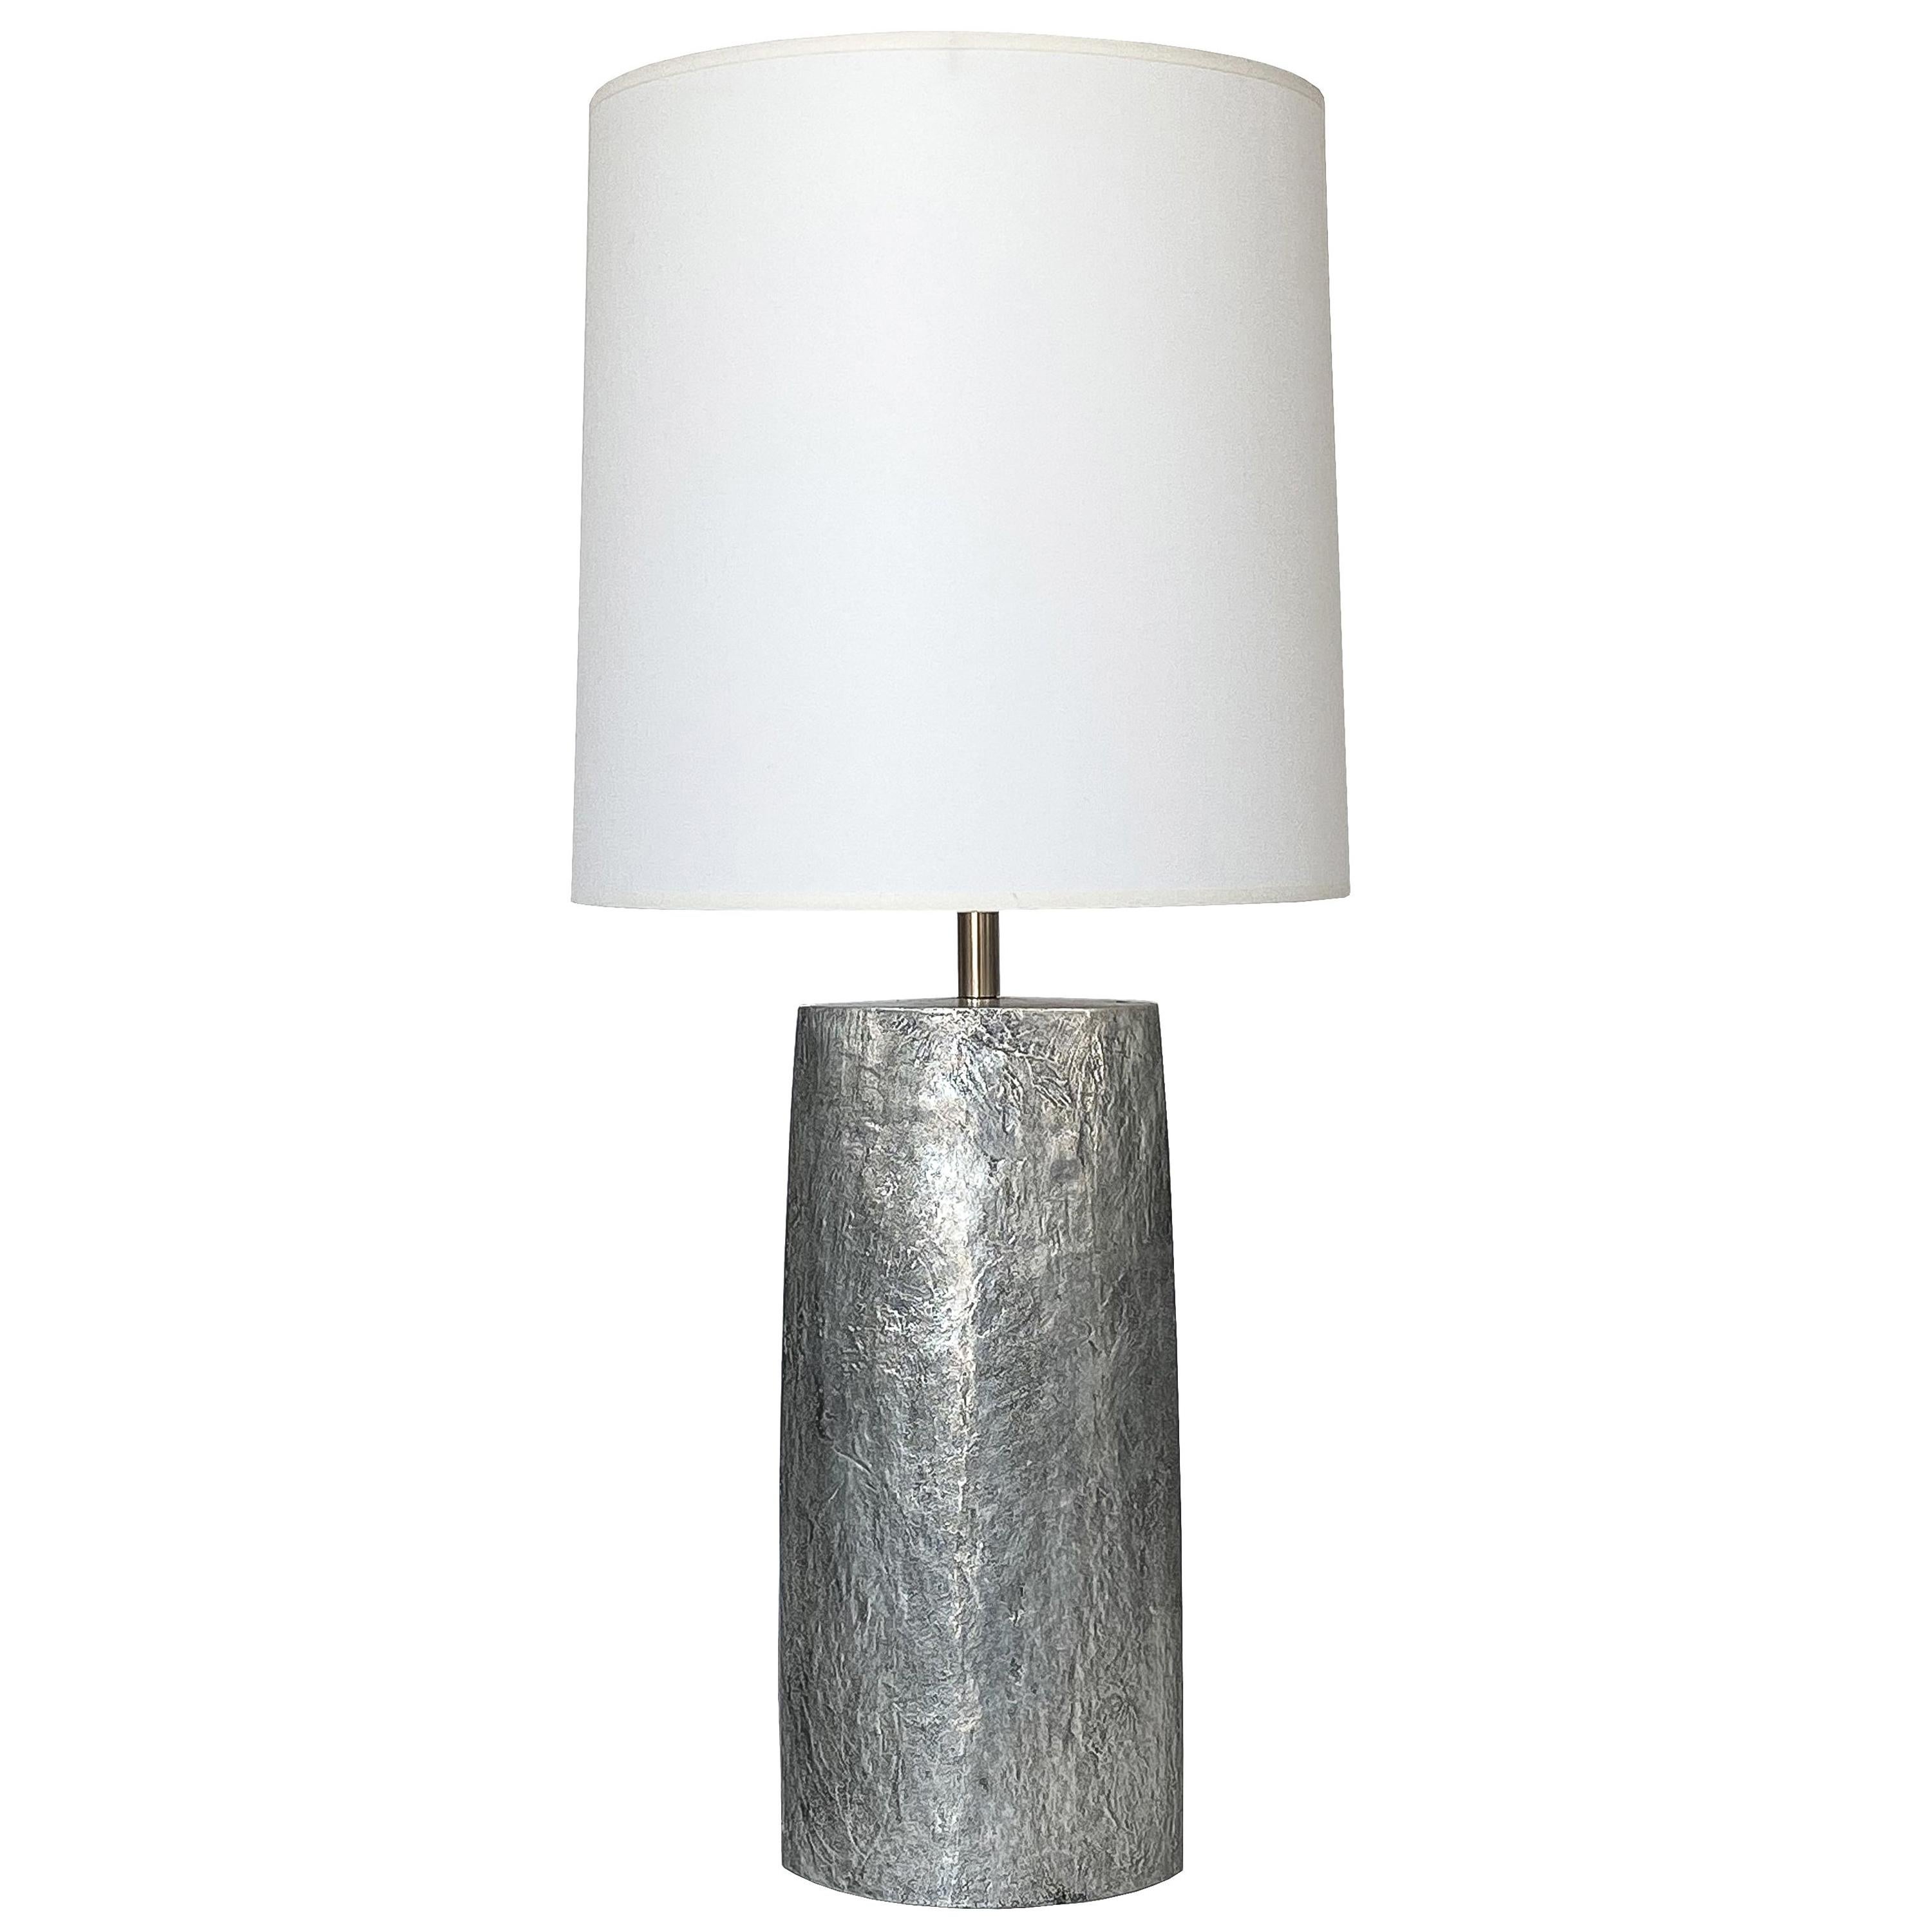 Monolithic Italian Aluminum Brutalist Table Lamp